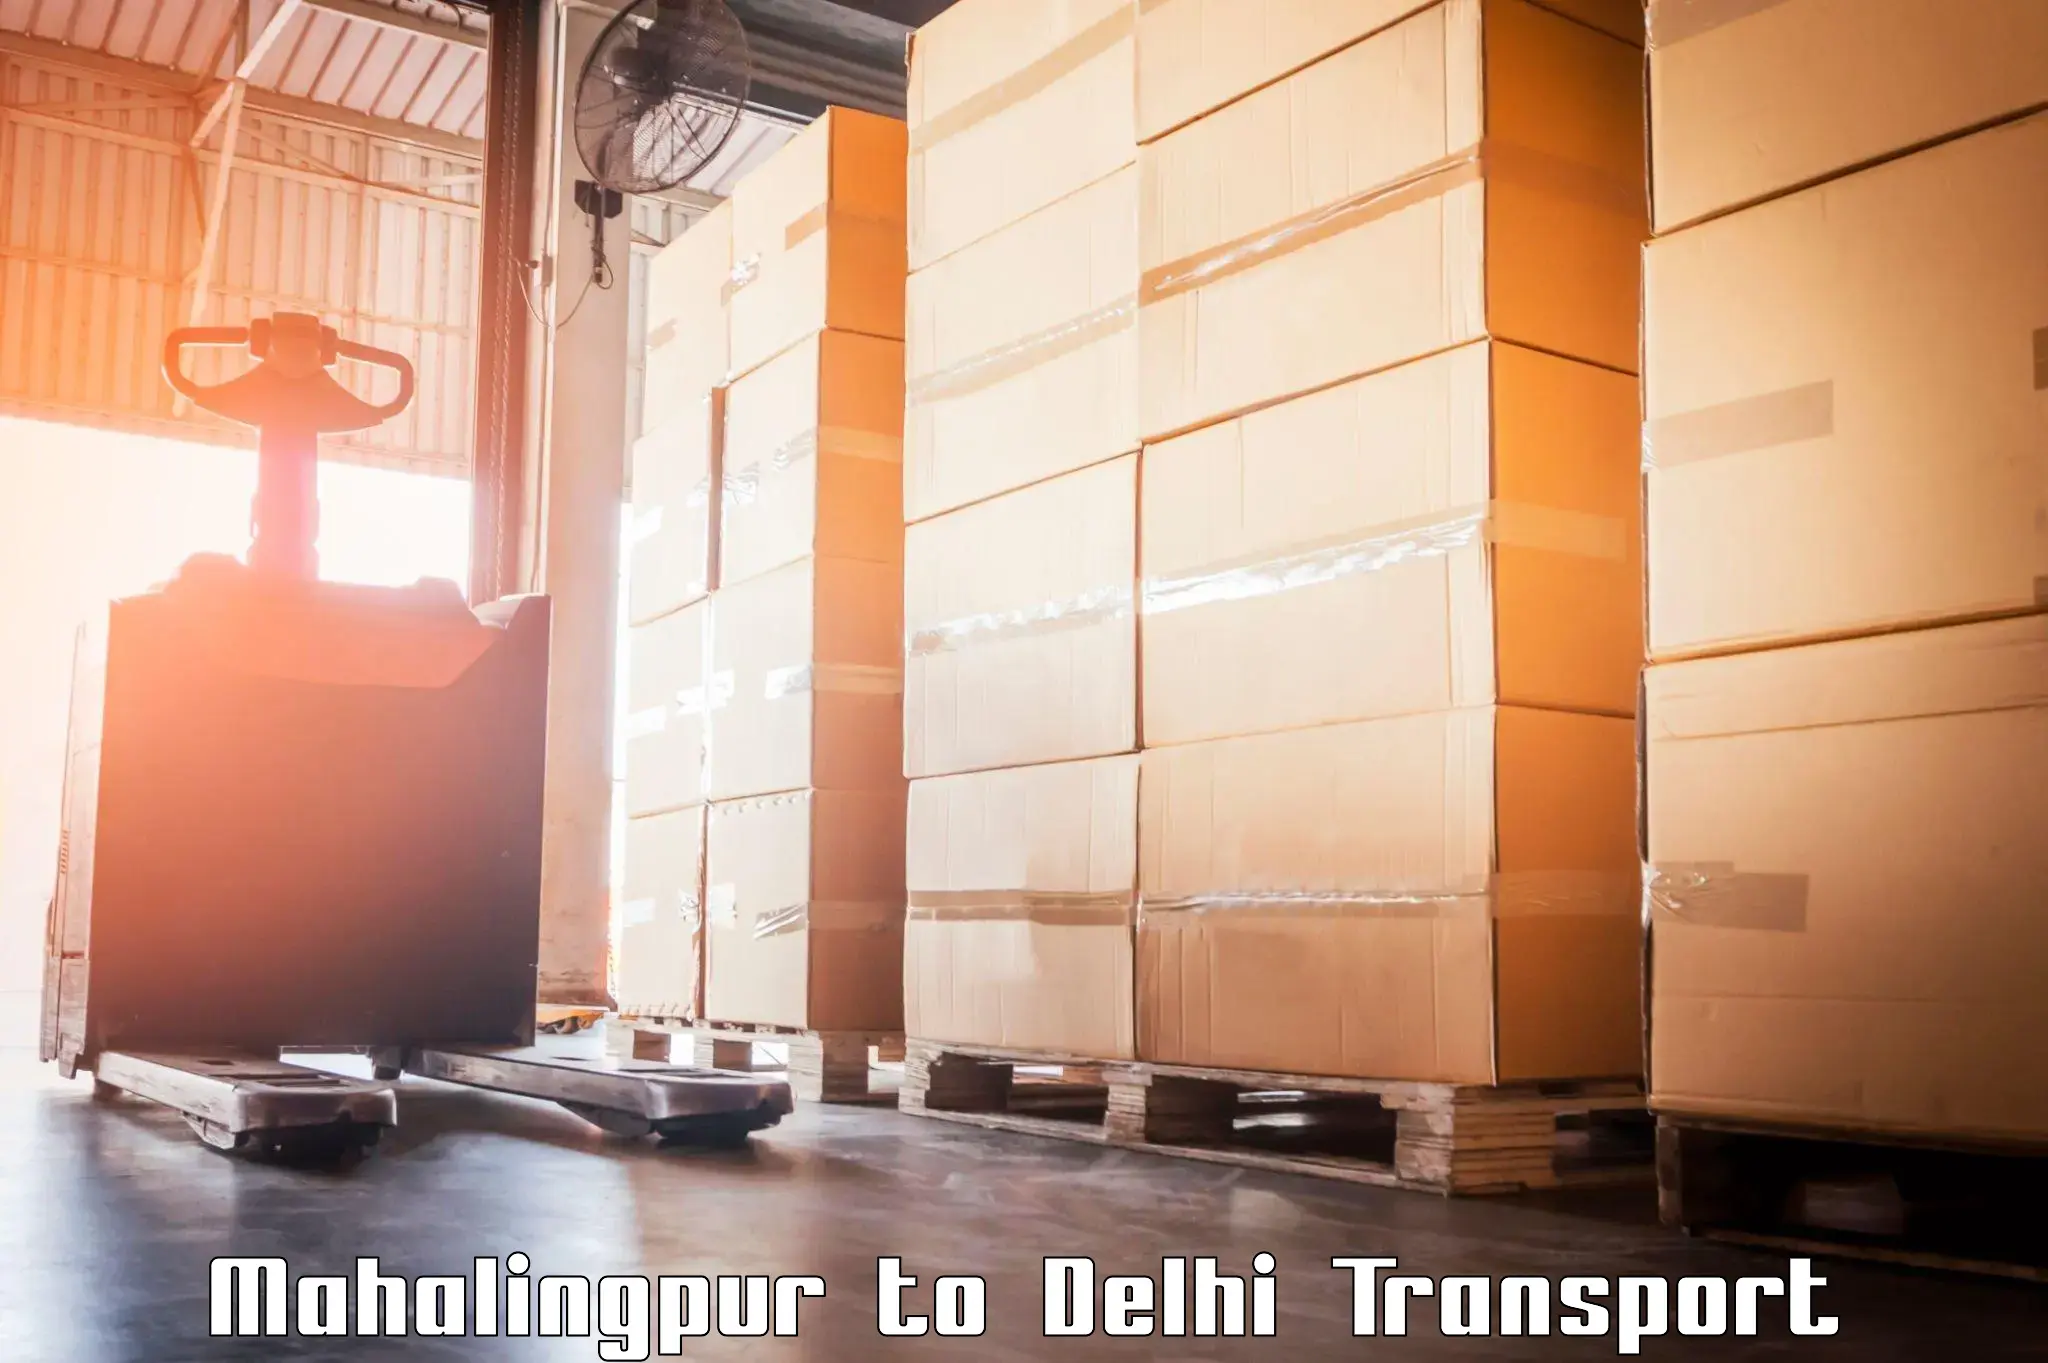 Domestic goods transportation services Mahalingpur to East Delhi